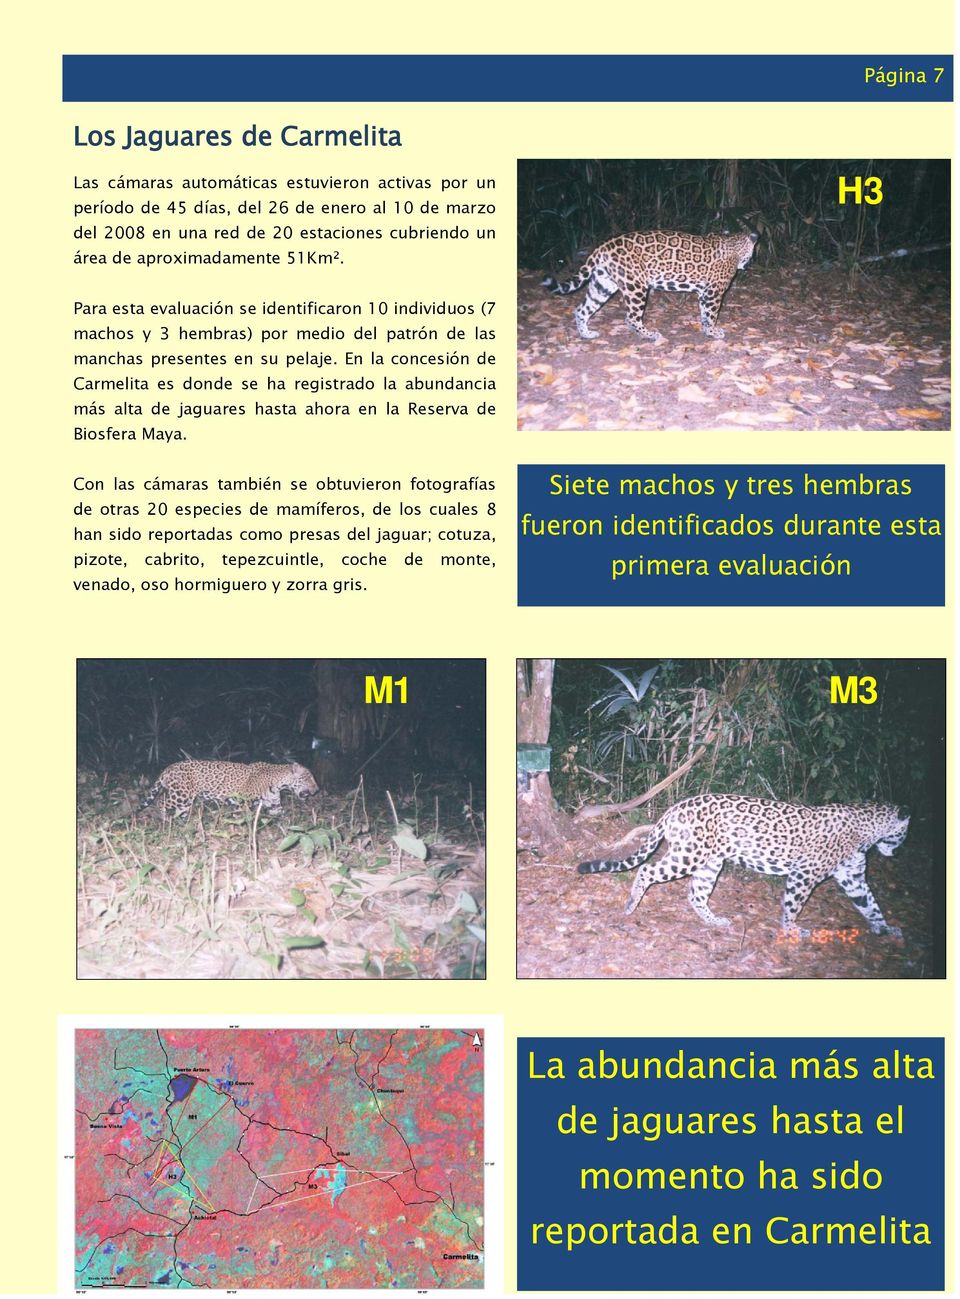 En la concesión de Carmelita es donde se ha registrado la abundancia más alta de jaguares hasta ahora en la Reserva de Biosfera Maya.